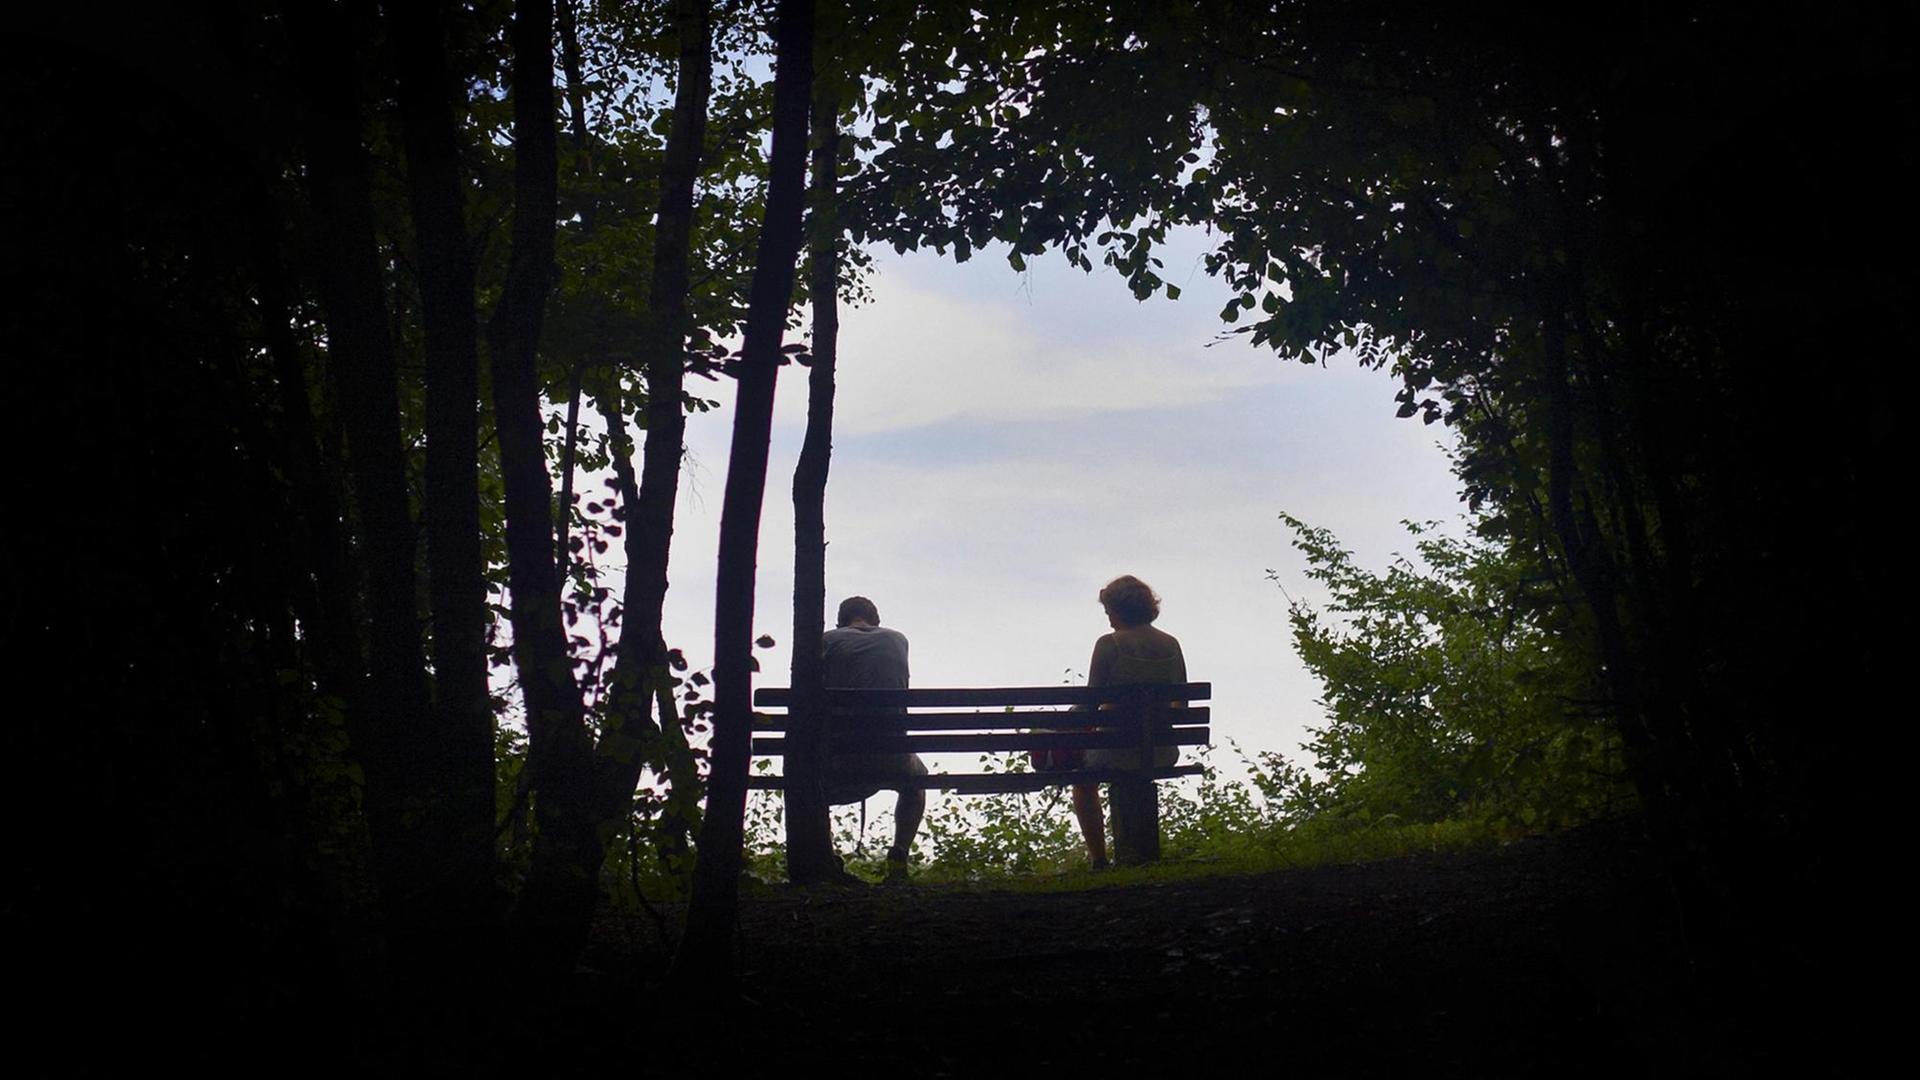 Ein Mann und eine Frau sitzen auf einer Bank zwischen Bäumen. Sie wirken erschöpft.